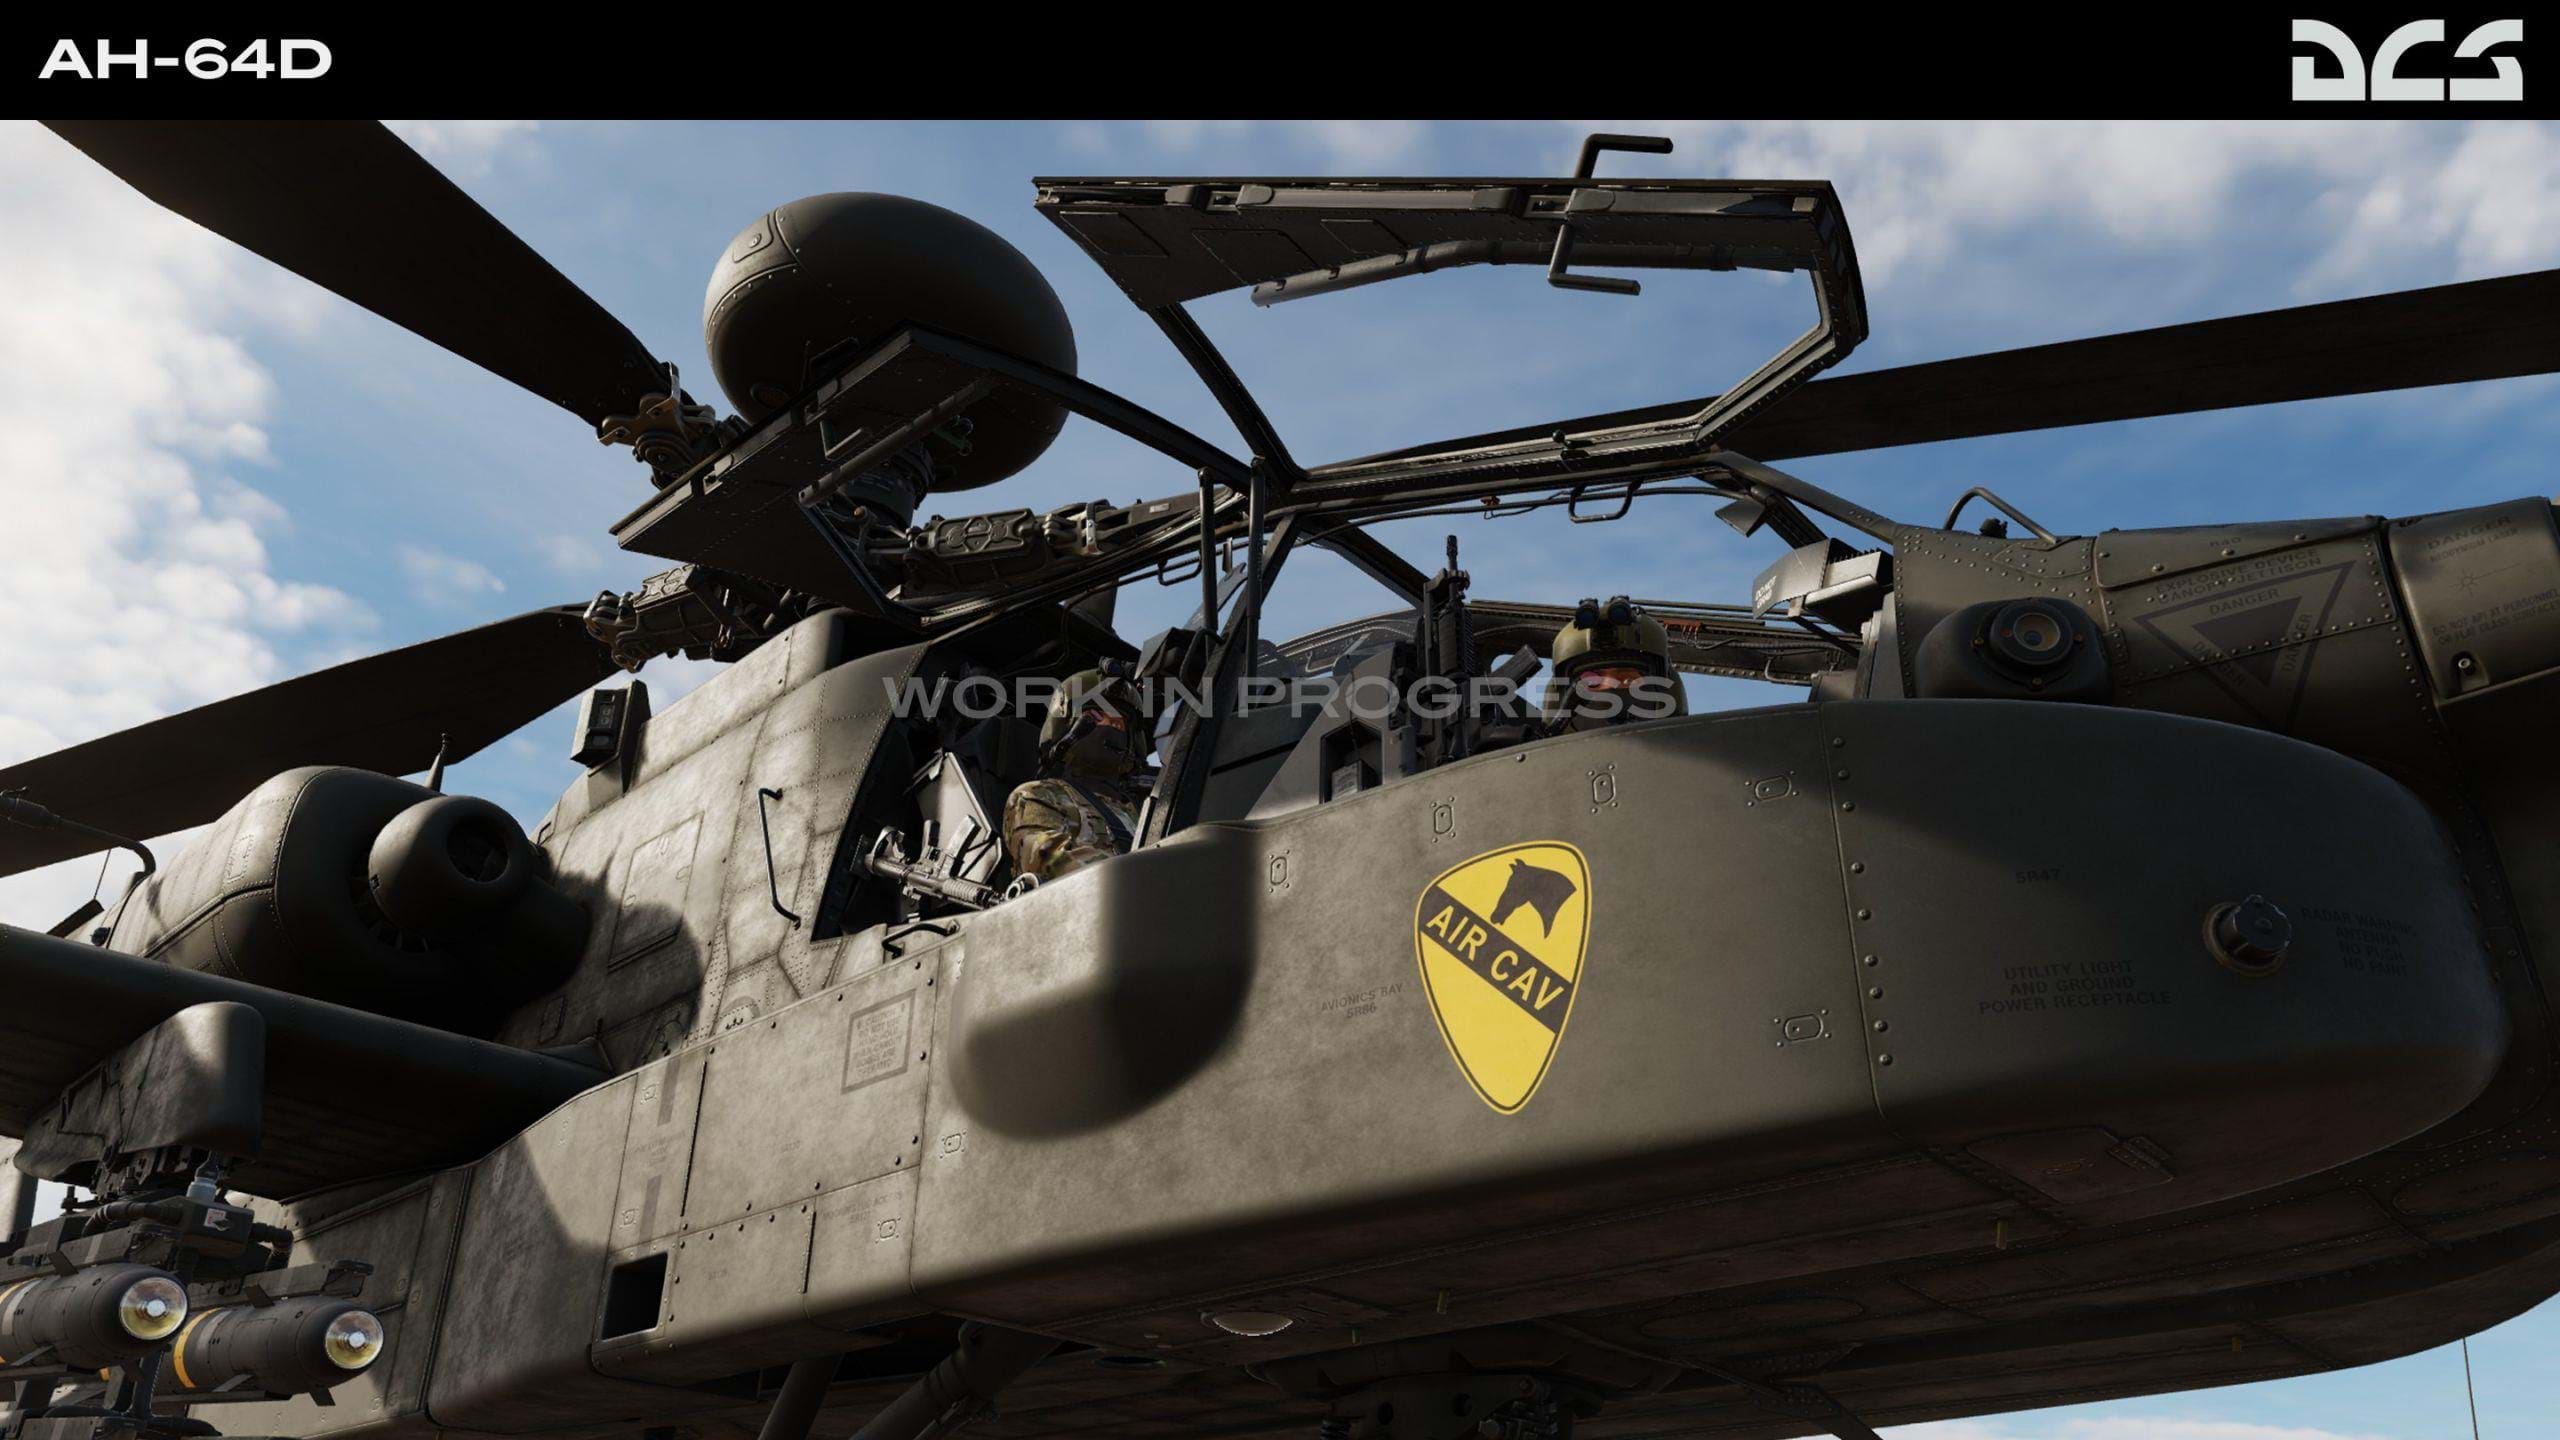 Eagle Dynamics AH-64D Apache for DCS